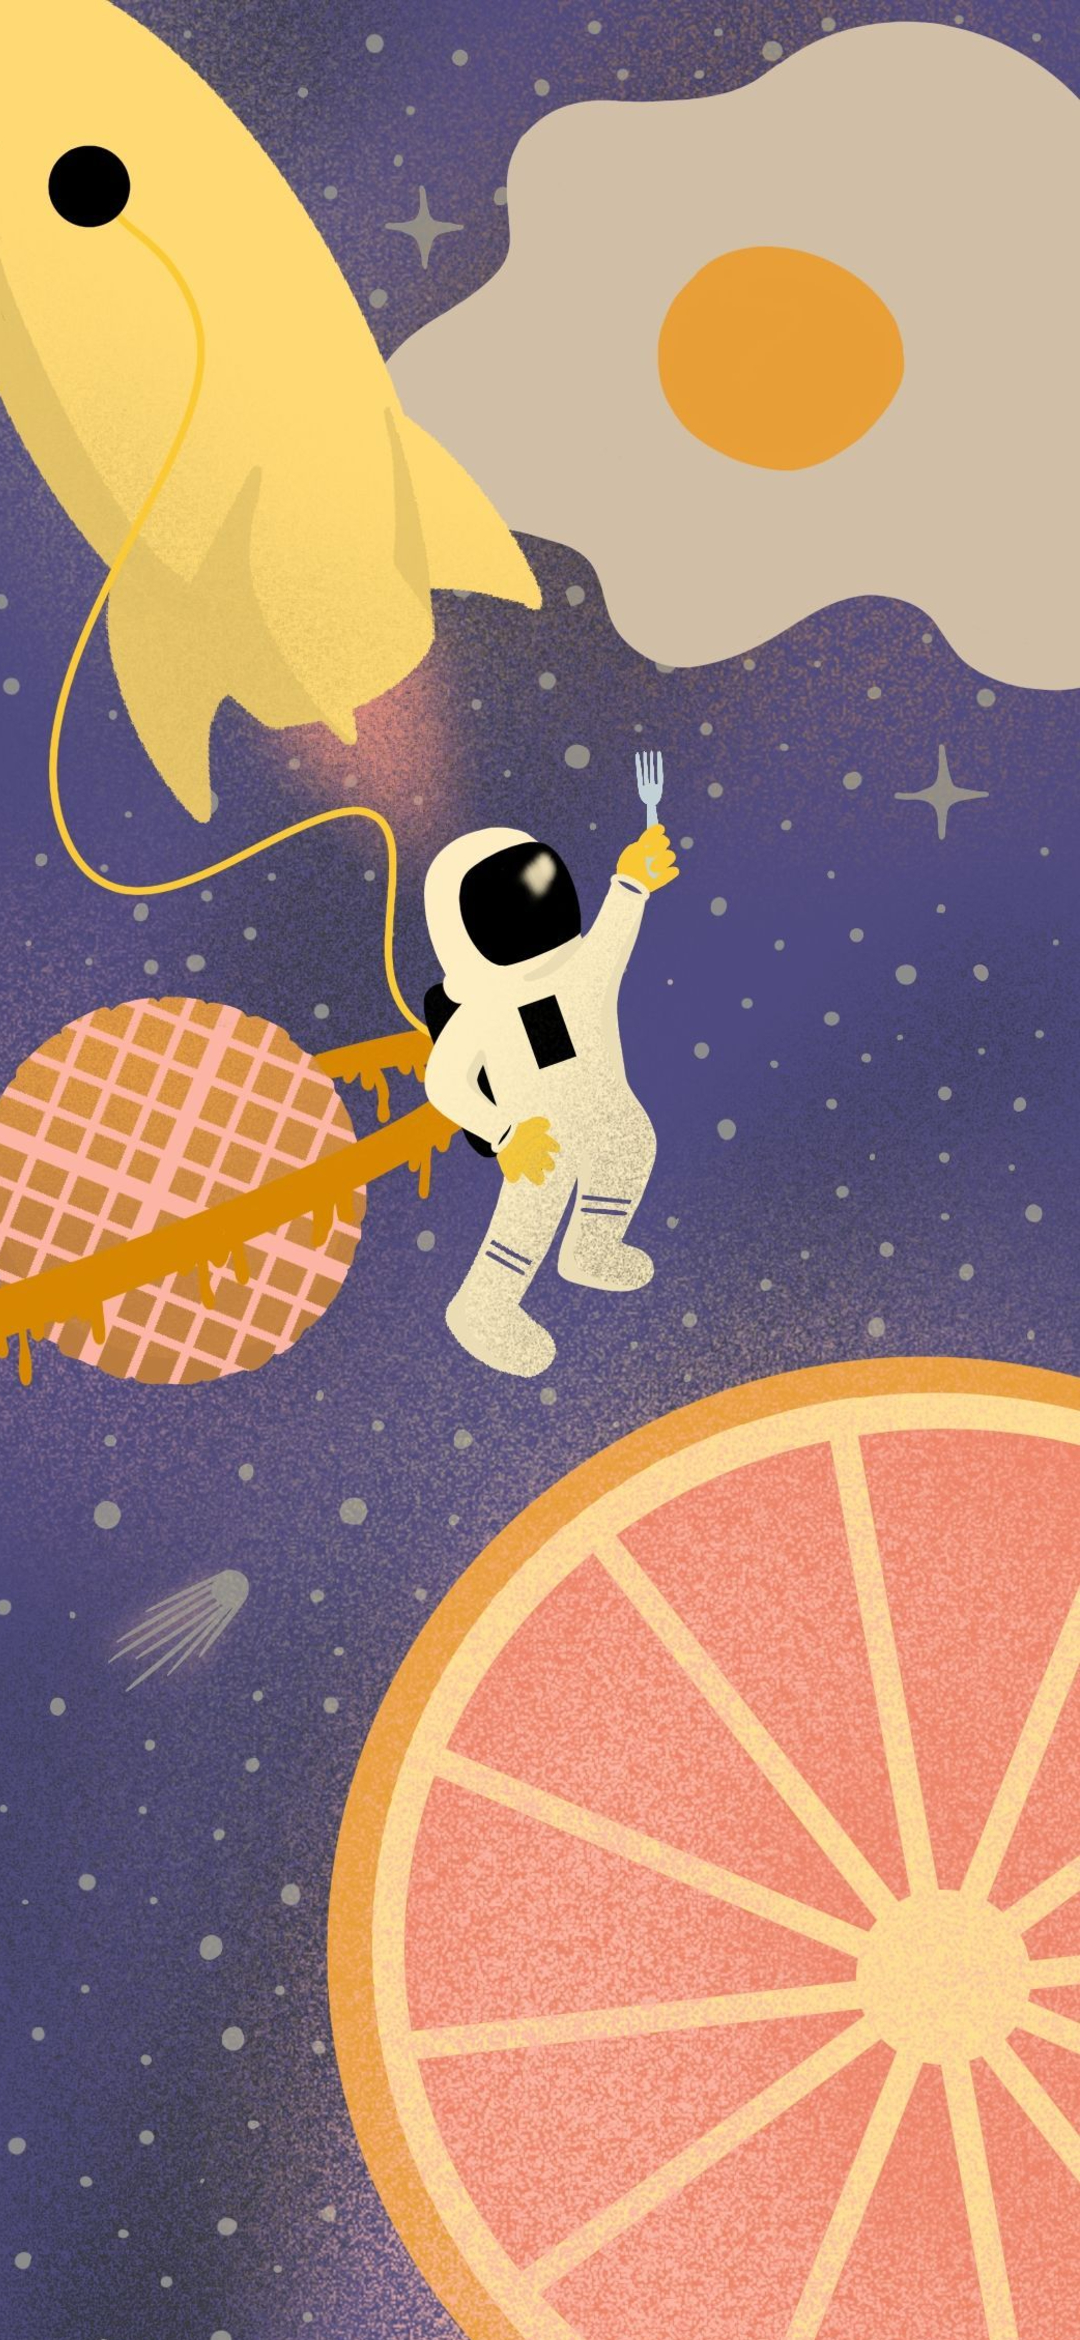 可愛い宇宙飛行士のイラスト Google Pixel 4a Android 壁紙 待ち受け Sumaran